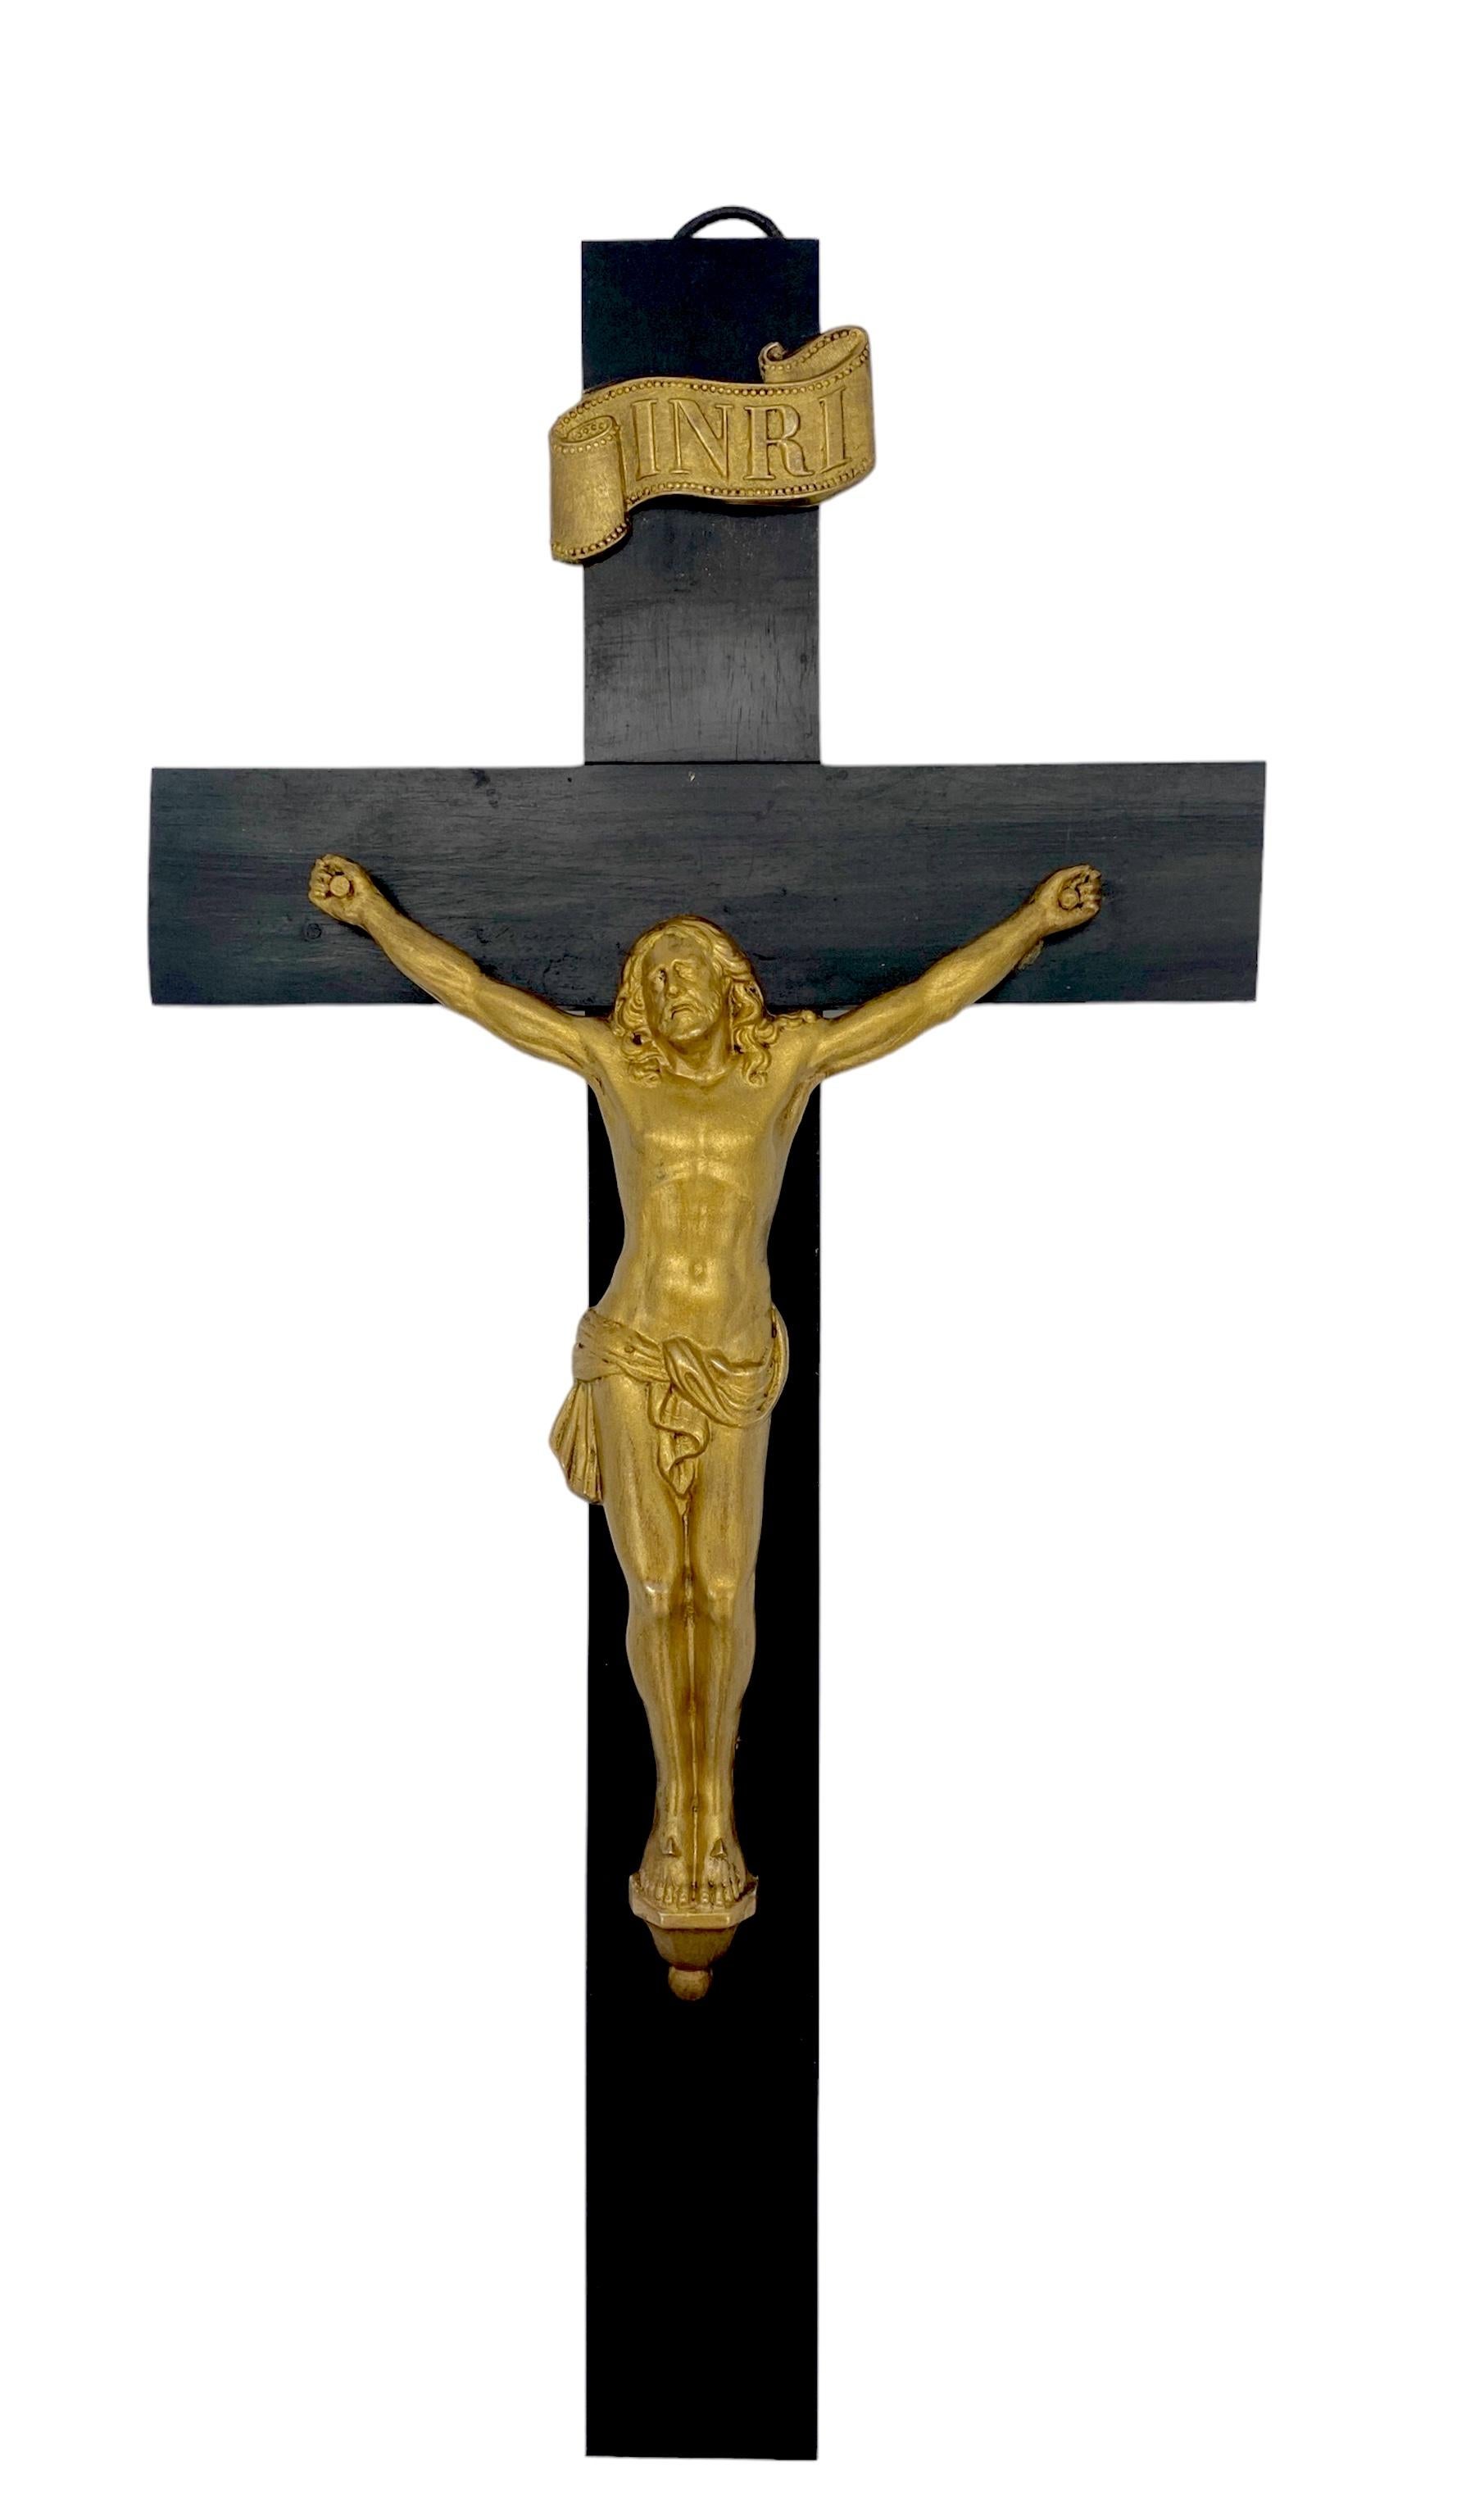 Vintage Italienisch Ebonized Wood & vergoldetes Metall Kreuz / Kruzifix
Italien, ca. 1950er Jahre 

Ein feines Vintage Italienisch Ebonized Holz & vergoldetem Metall Kruzifix / Kreuz, in Italien in den 1950er Jahren gemacht. Dieses Kruzifix ist von